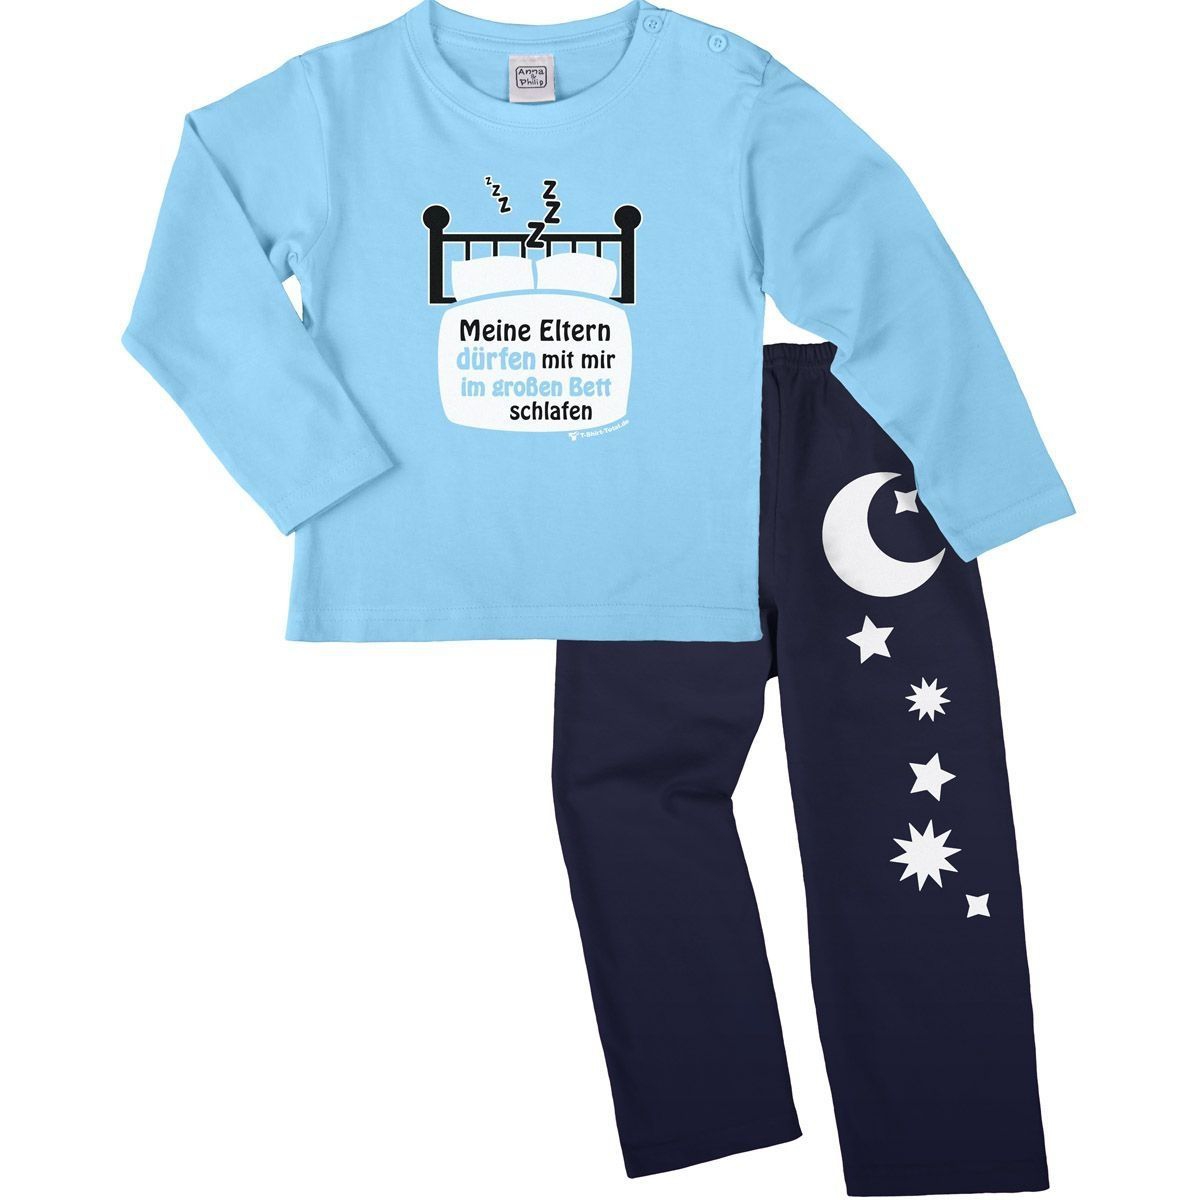 Im großen Bett schlafen Pyjama Set hellblau / navy 110 / 116